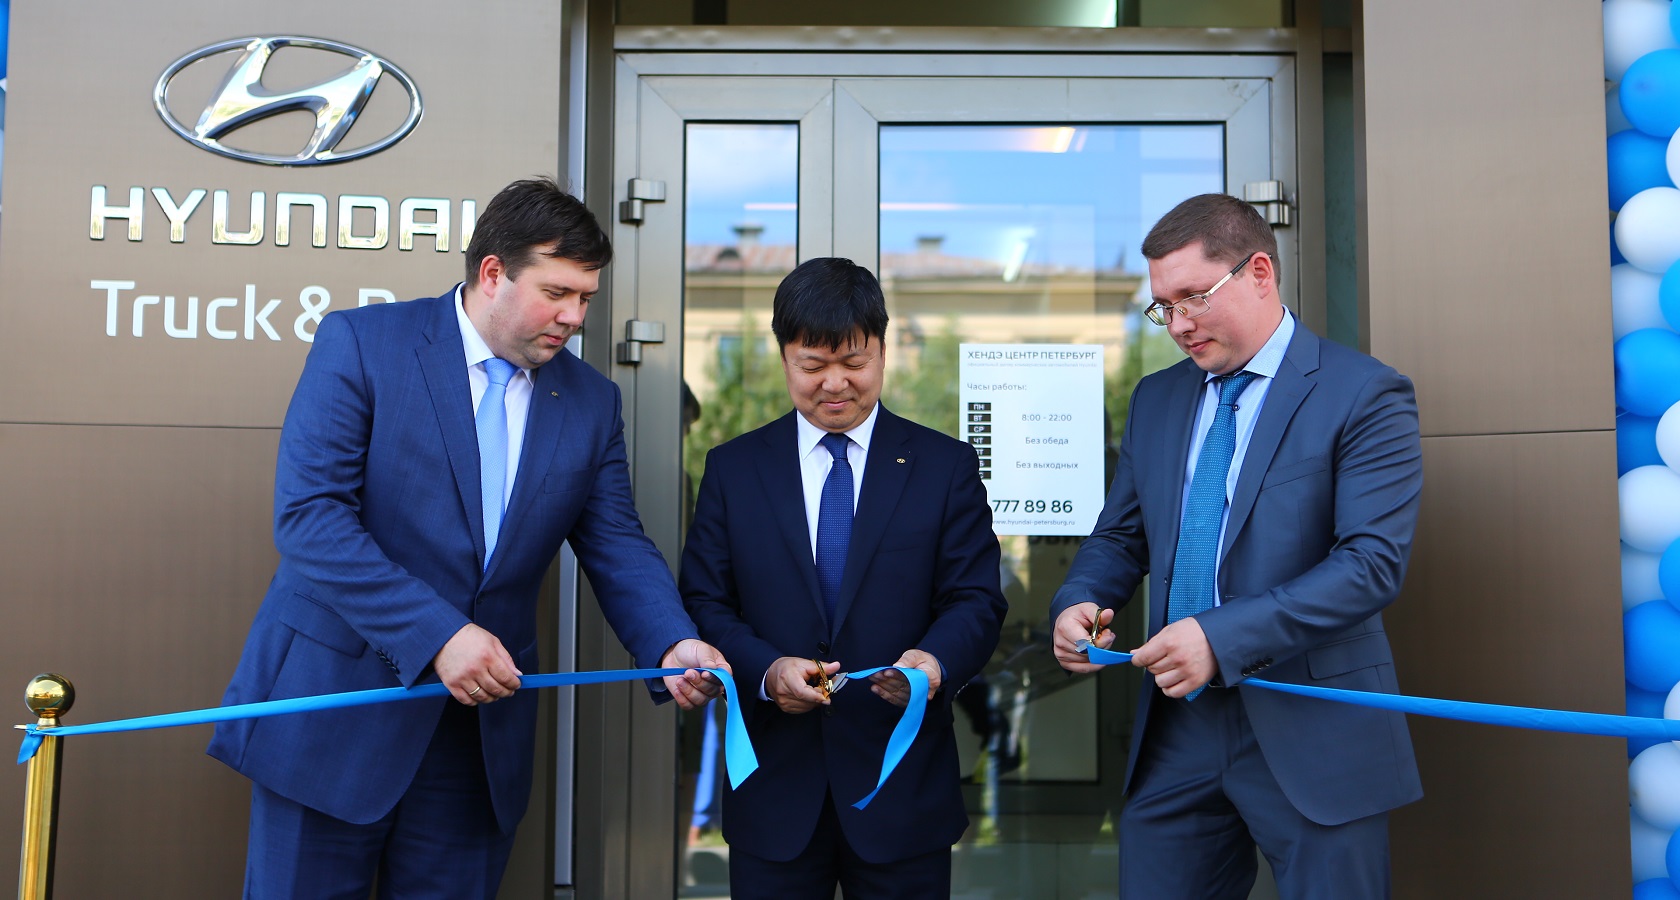 В Санкт-Петербурге прошла презентация обновленного автосалона Hyundai